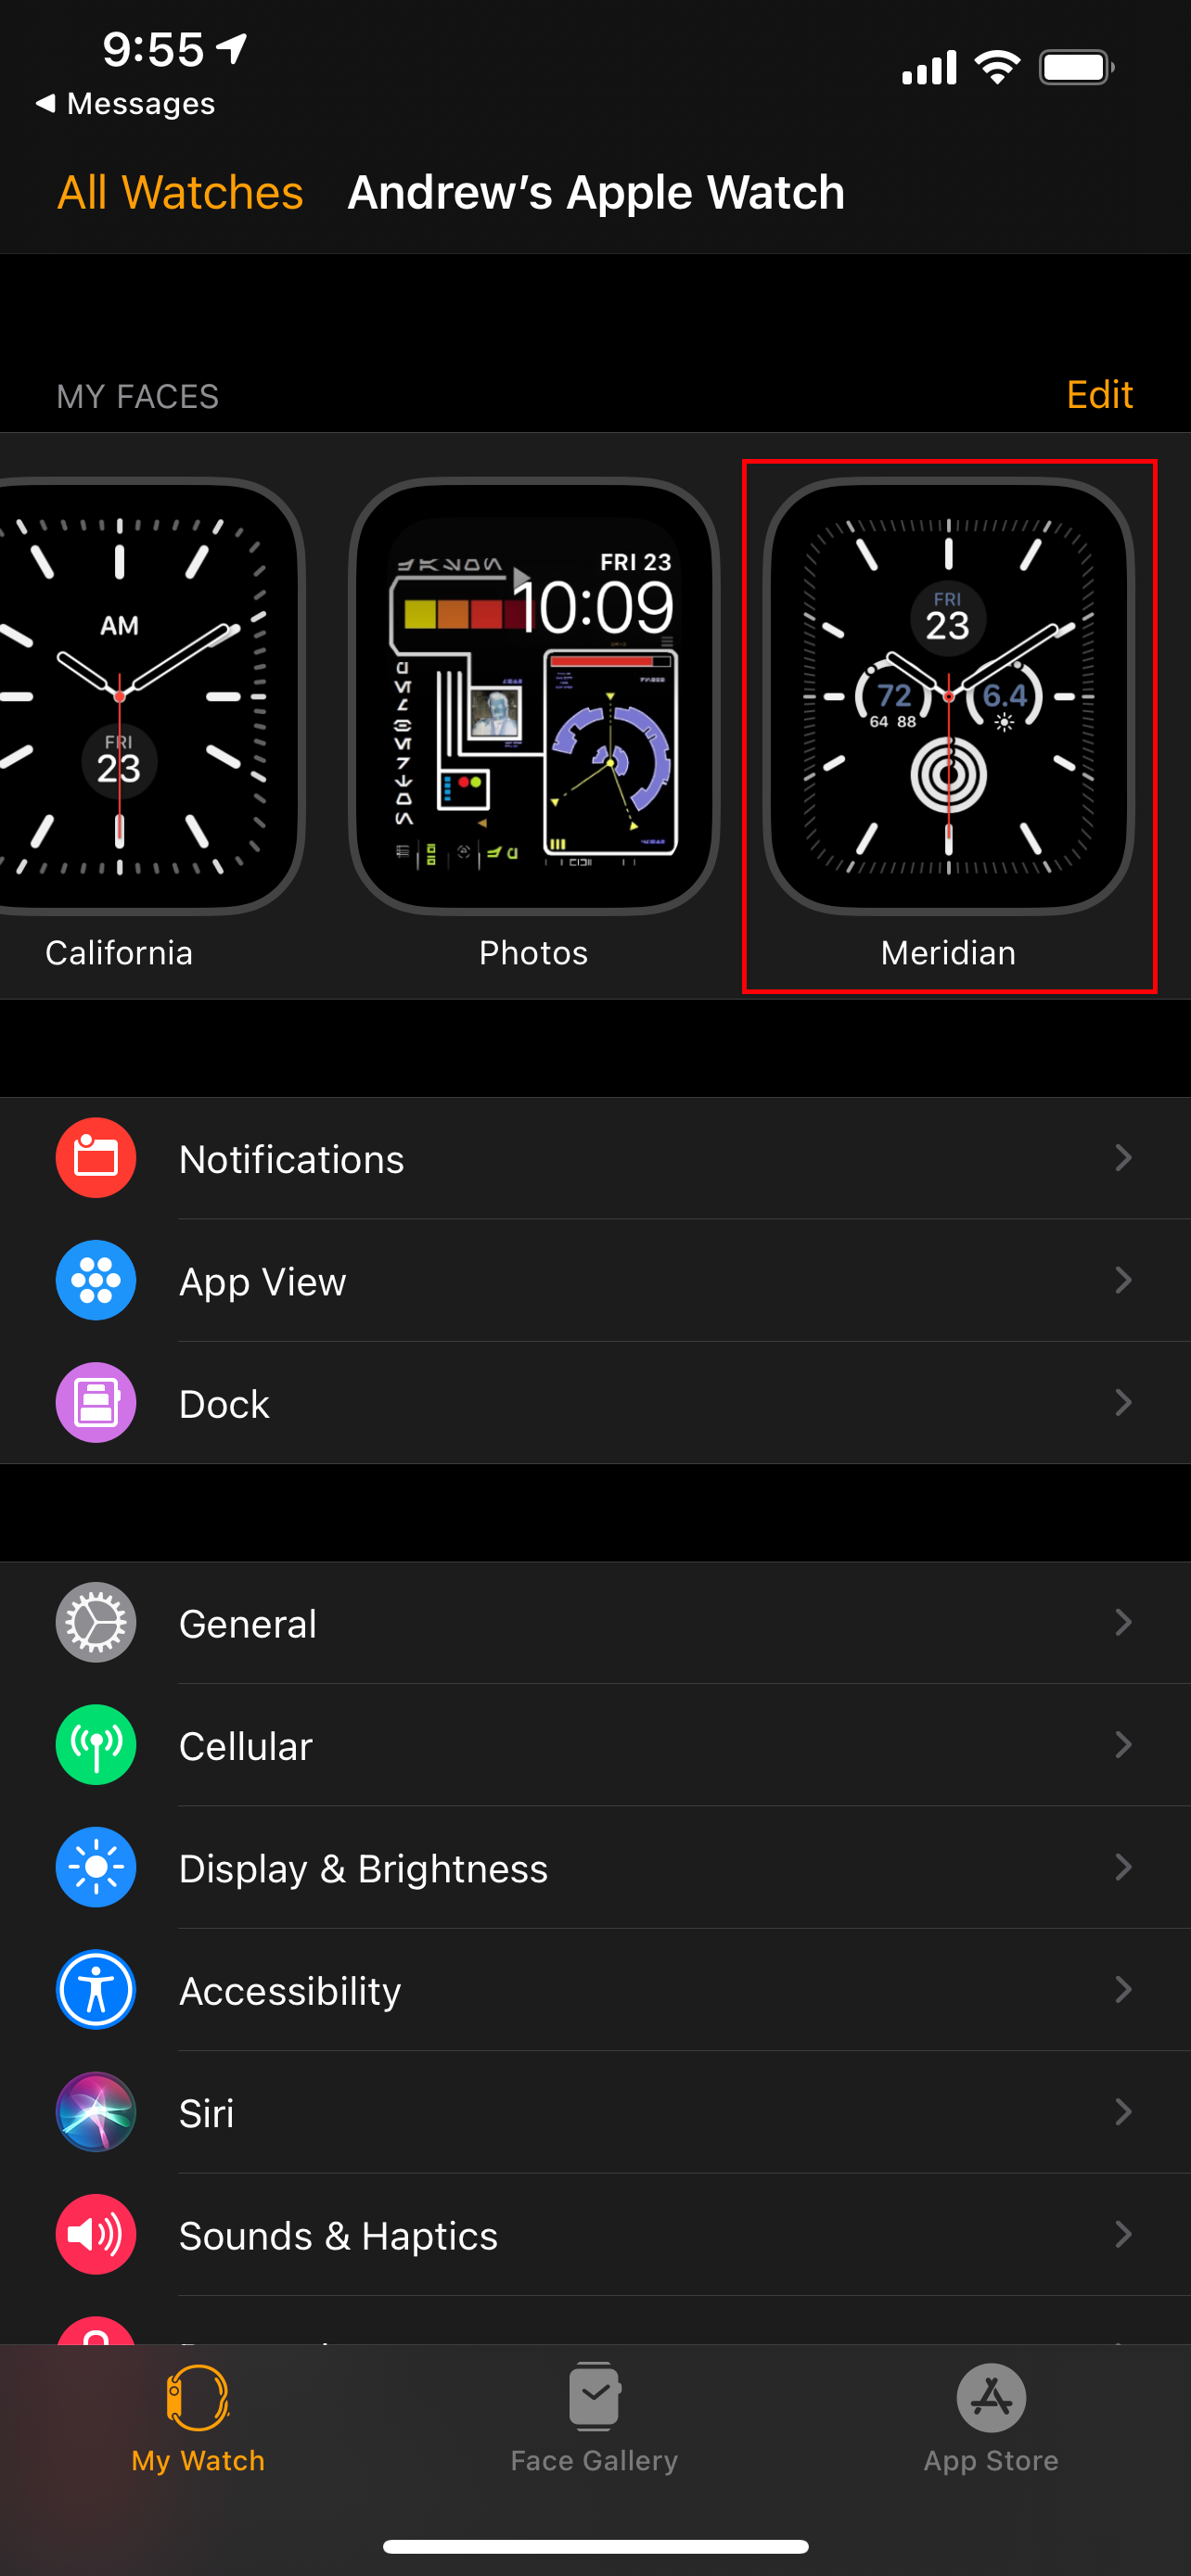 New Watch Face in Watch app